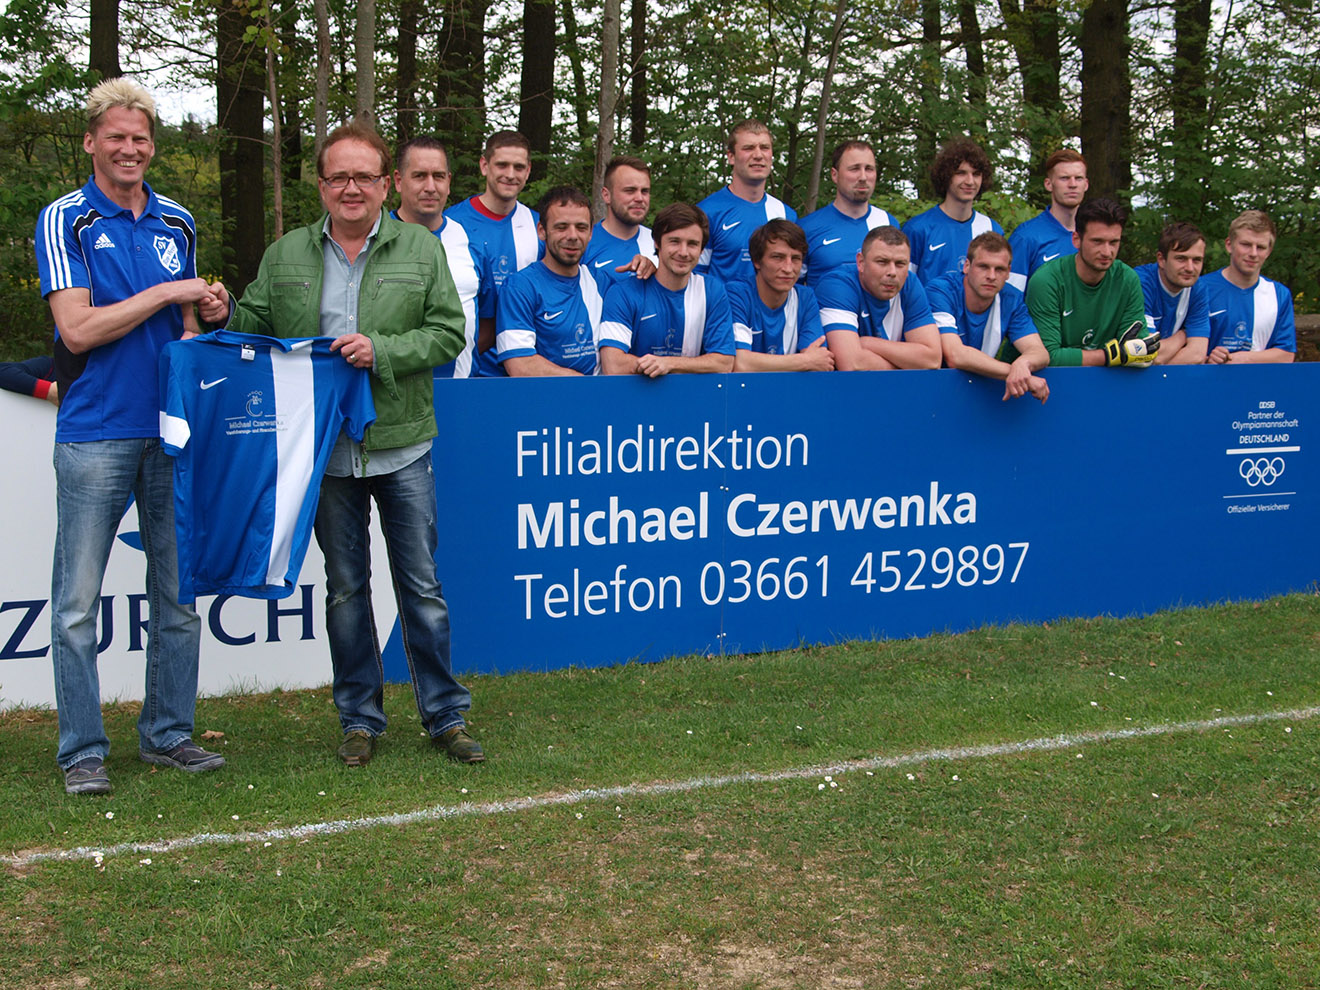 Michael Czerwenka engagiert sich als Sponsor